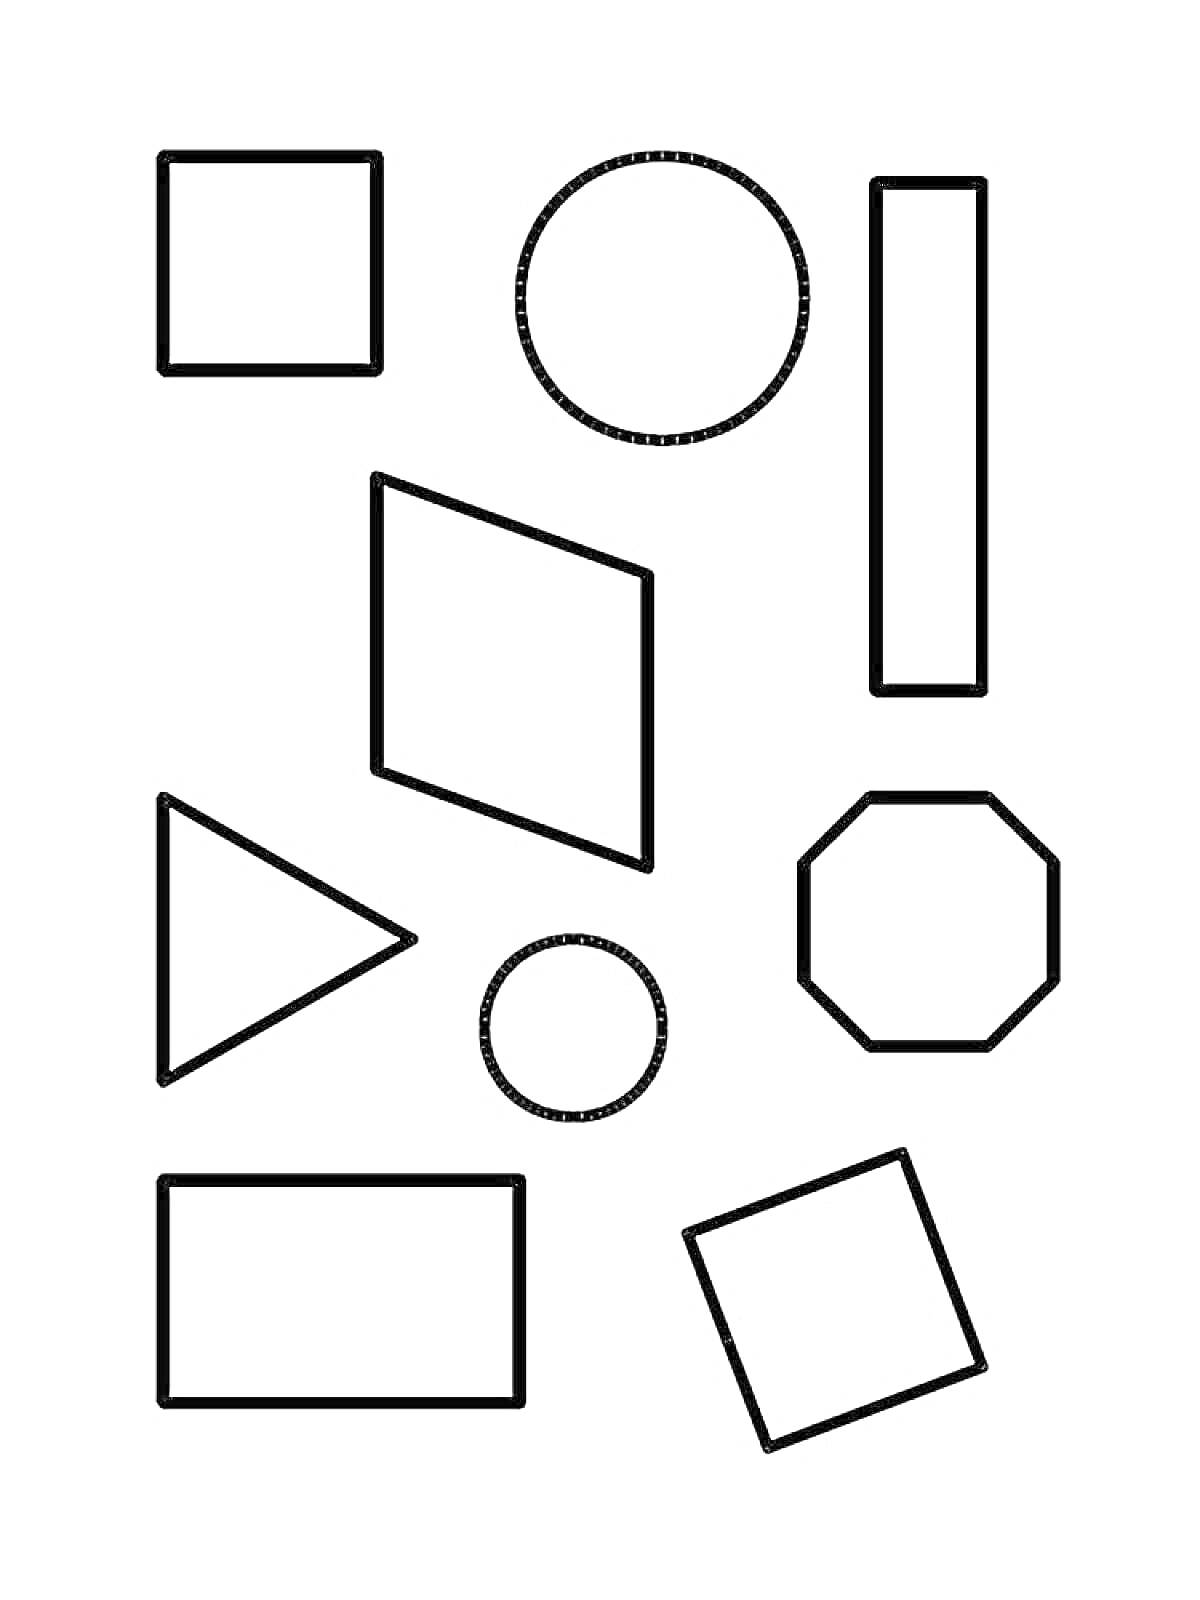 Раскраска квадрат, круг, прямоугольник, ромб, треугольник, круг, восьмиугольник, прямоугольник, наклонённый квадрат